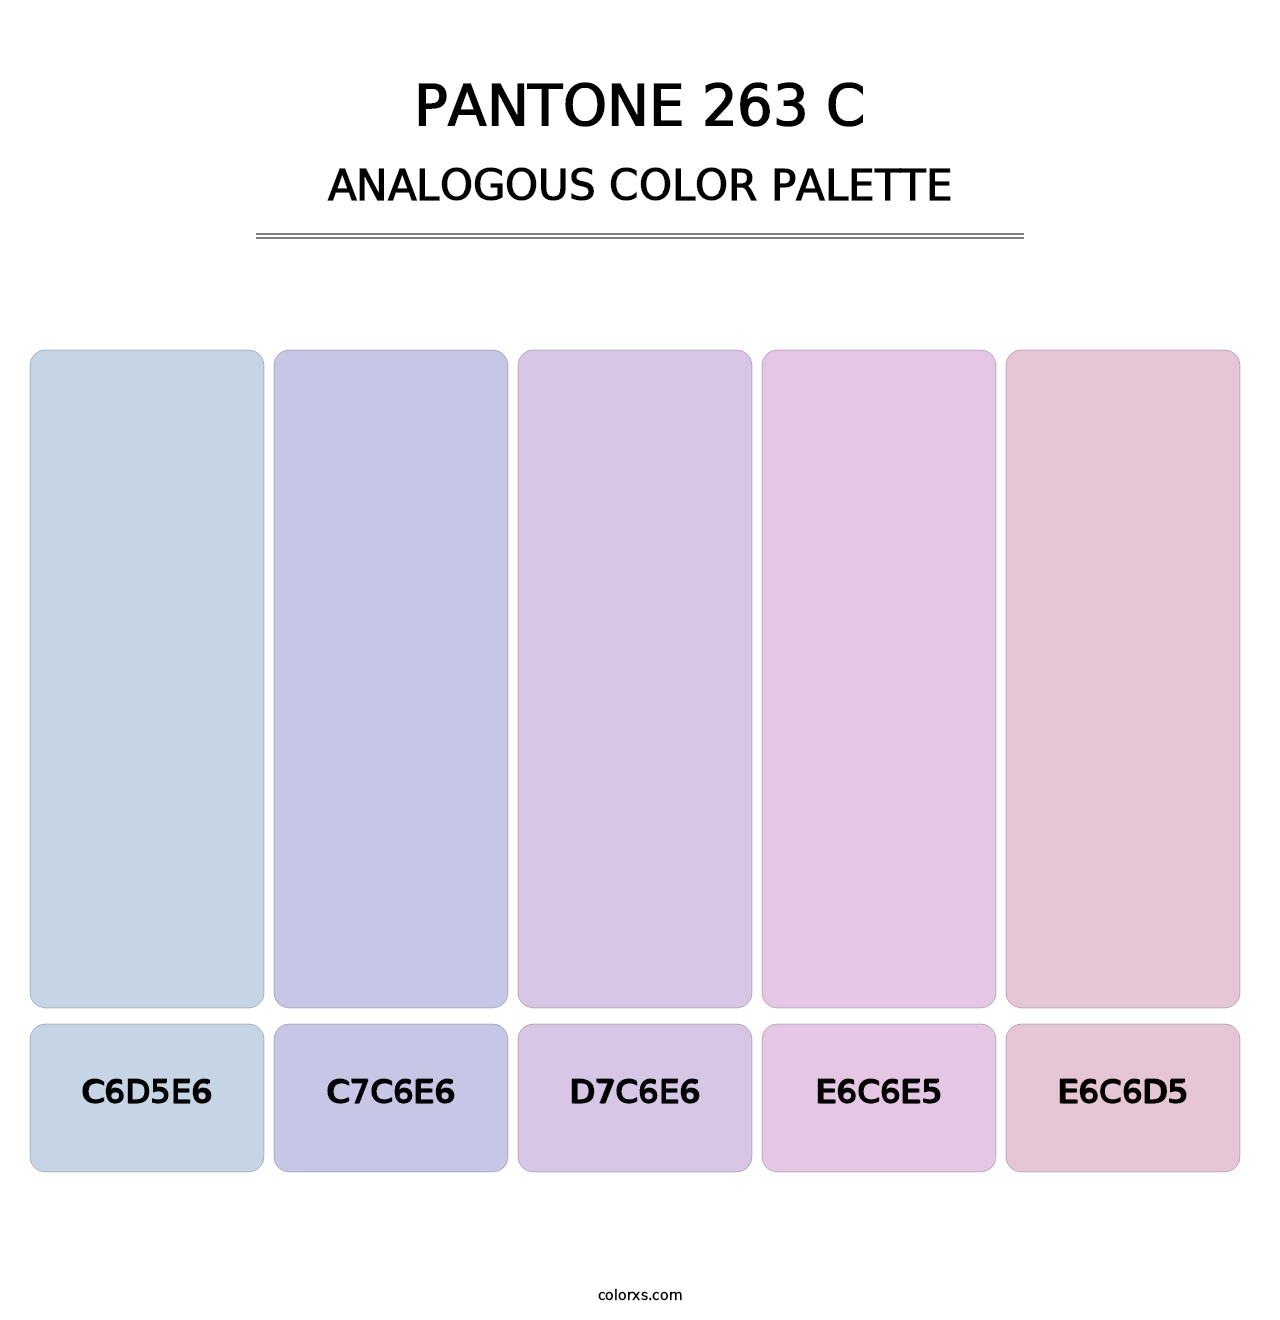 PANTONE 263 C - Analogous Color Palette